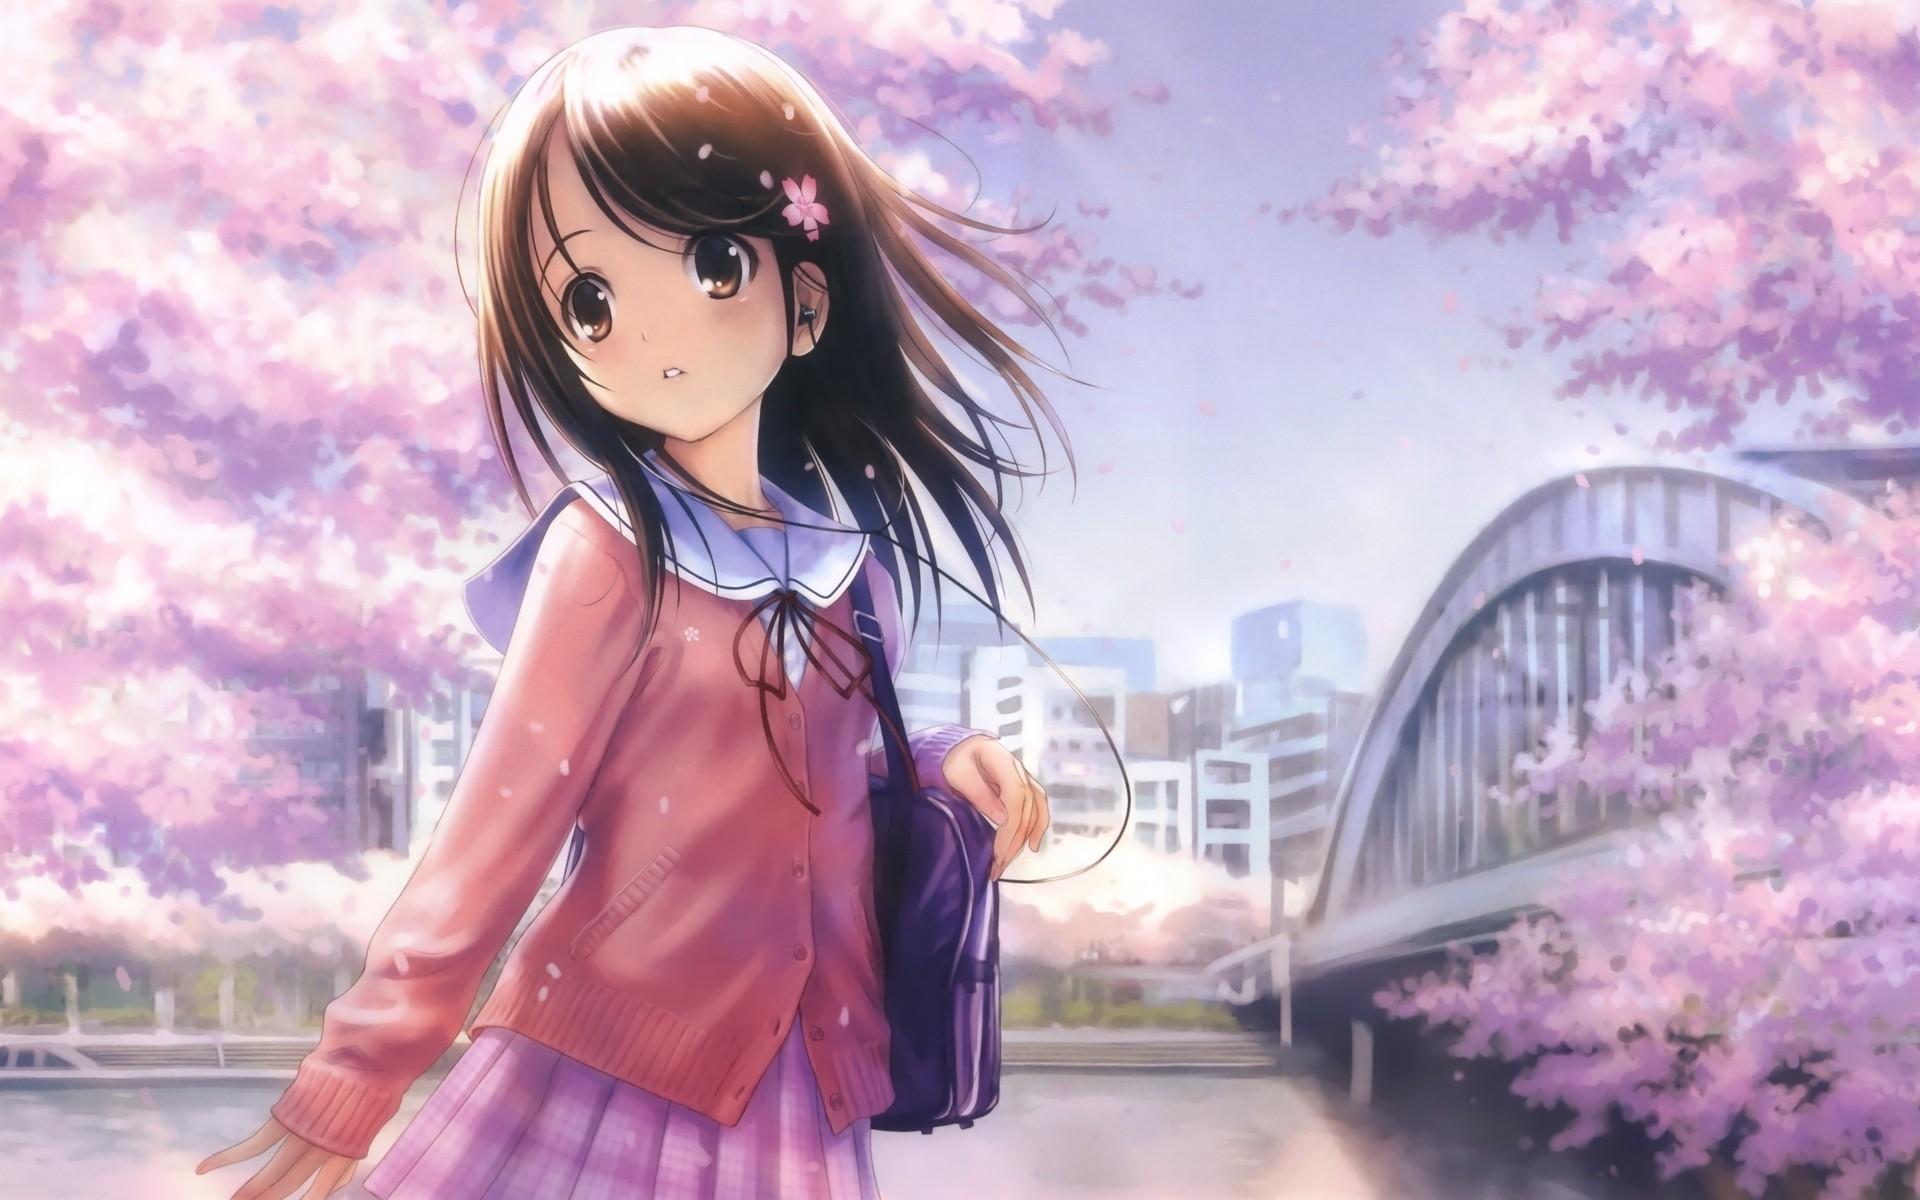 anime Girls, Shirt, City, Bridge, Original Characters, Cherry